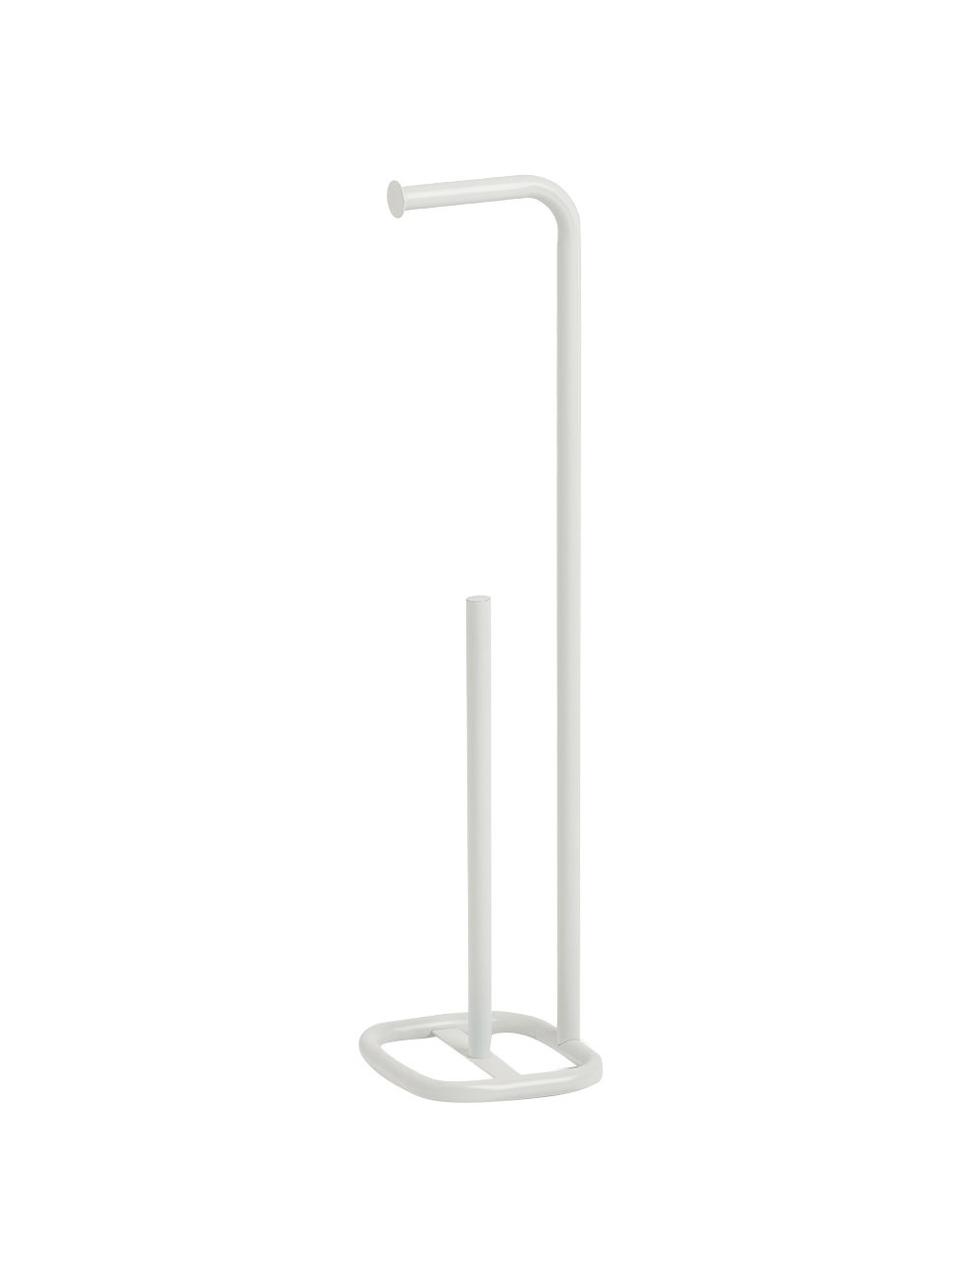 Stojak na papier toaletowy z metalu Mella, Metal powlekany, Biały, Ø 18 x W 73 cm